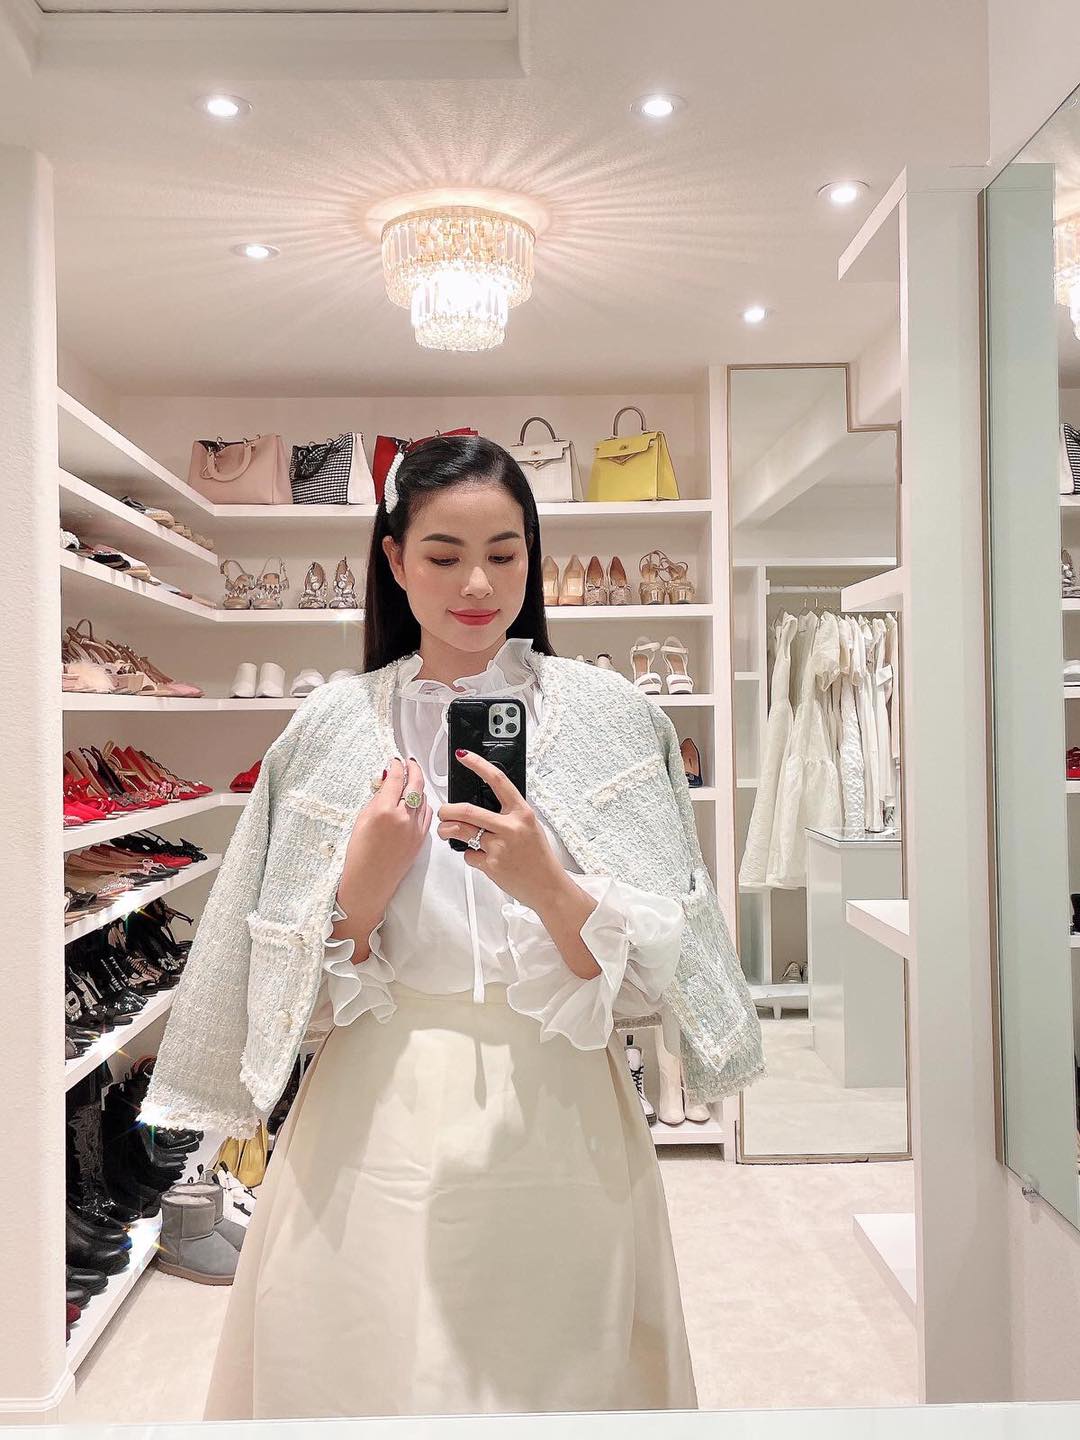 Hoa hậu Phạm Hương diện set đồ trắng sang trọng, điệu đà tạo dáng trước gương. Người đẹp thử đồ trong căn phòng ngập quần áo, giày dép, túi xách hàng hiệu.